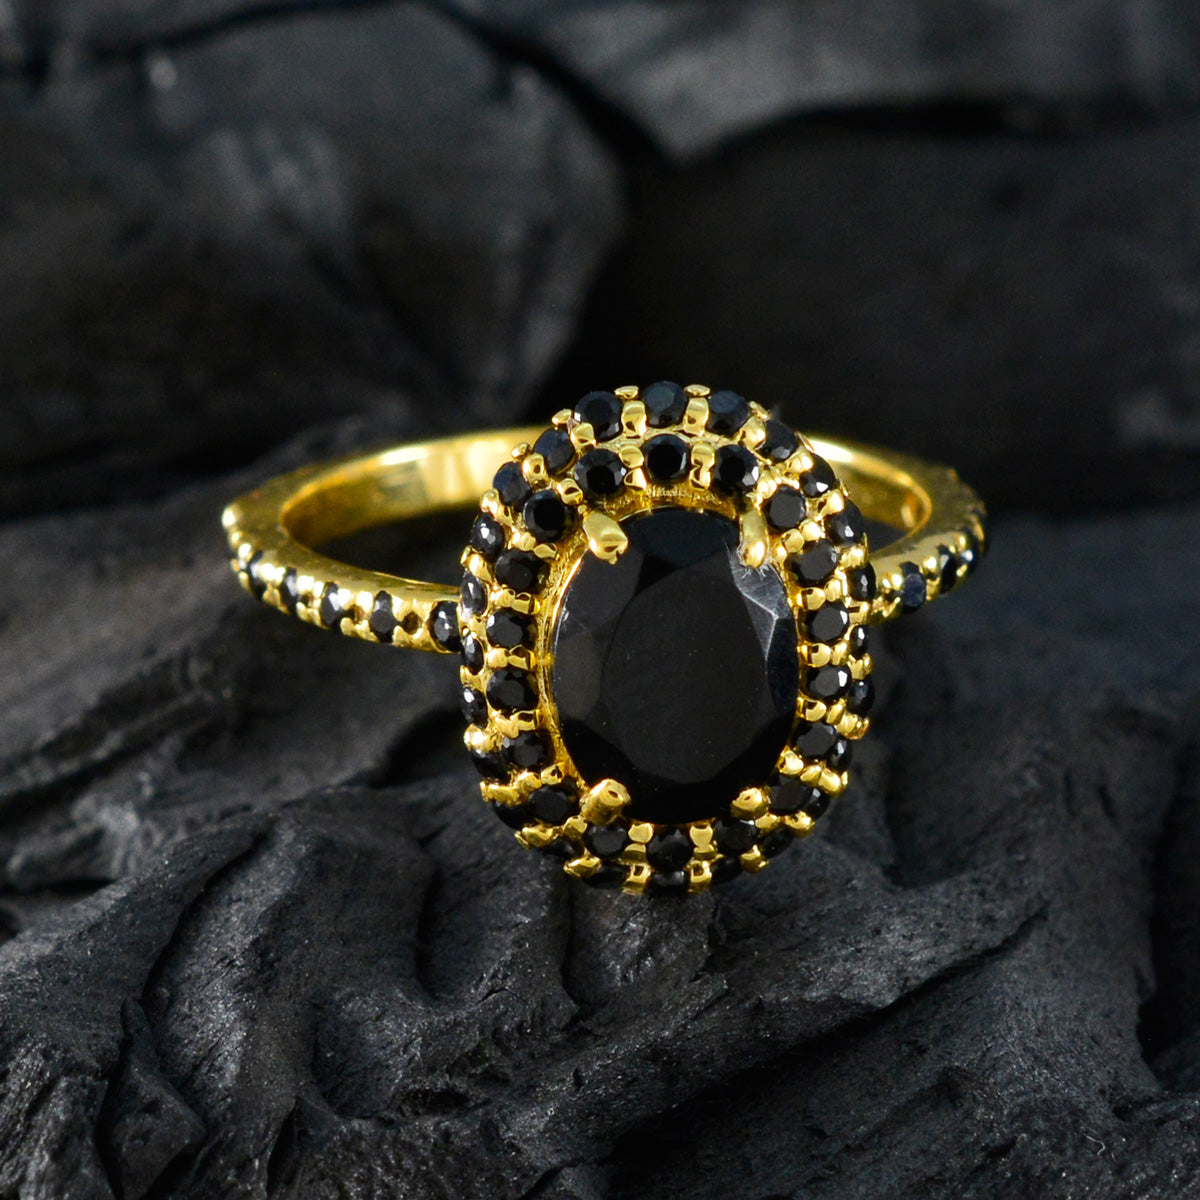 Riyo-Edelstein-Silberring mit gelber Vergoldung, schwarzem Onyx-Stein, ovale Form, Krappenfassung, Schmuck, Cocktail-Ring